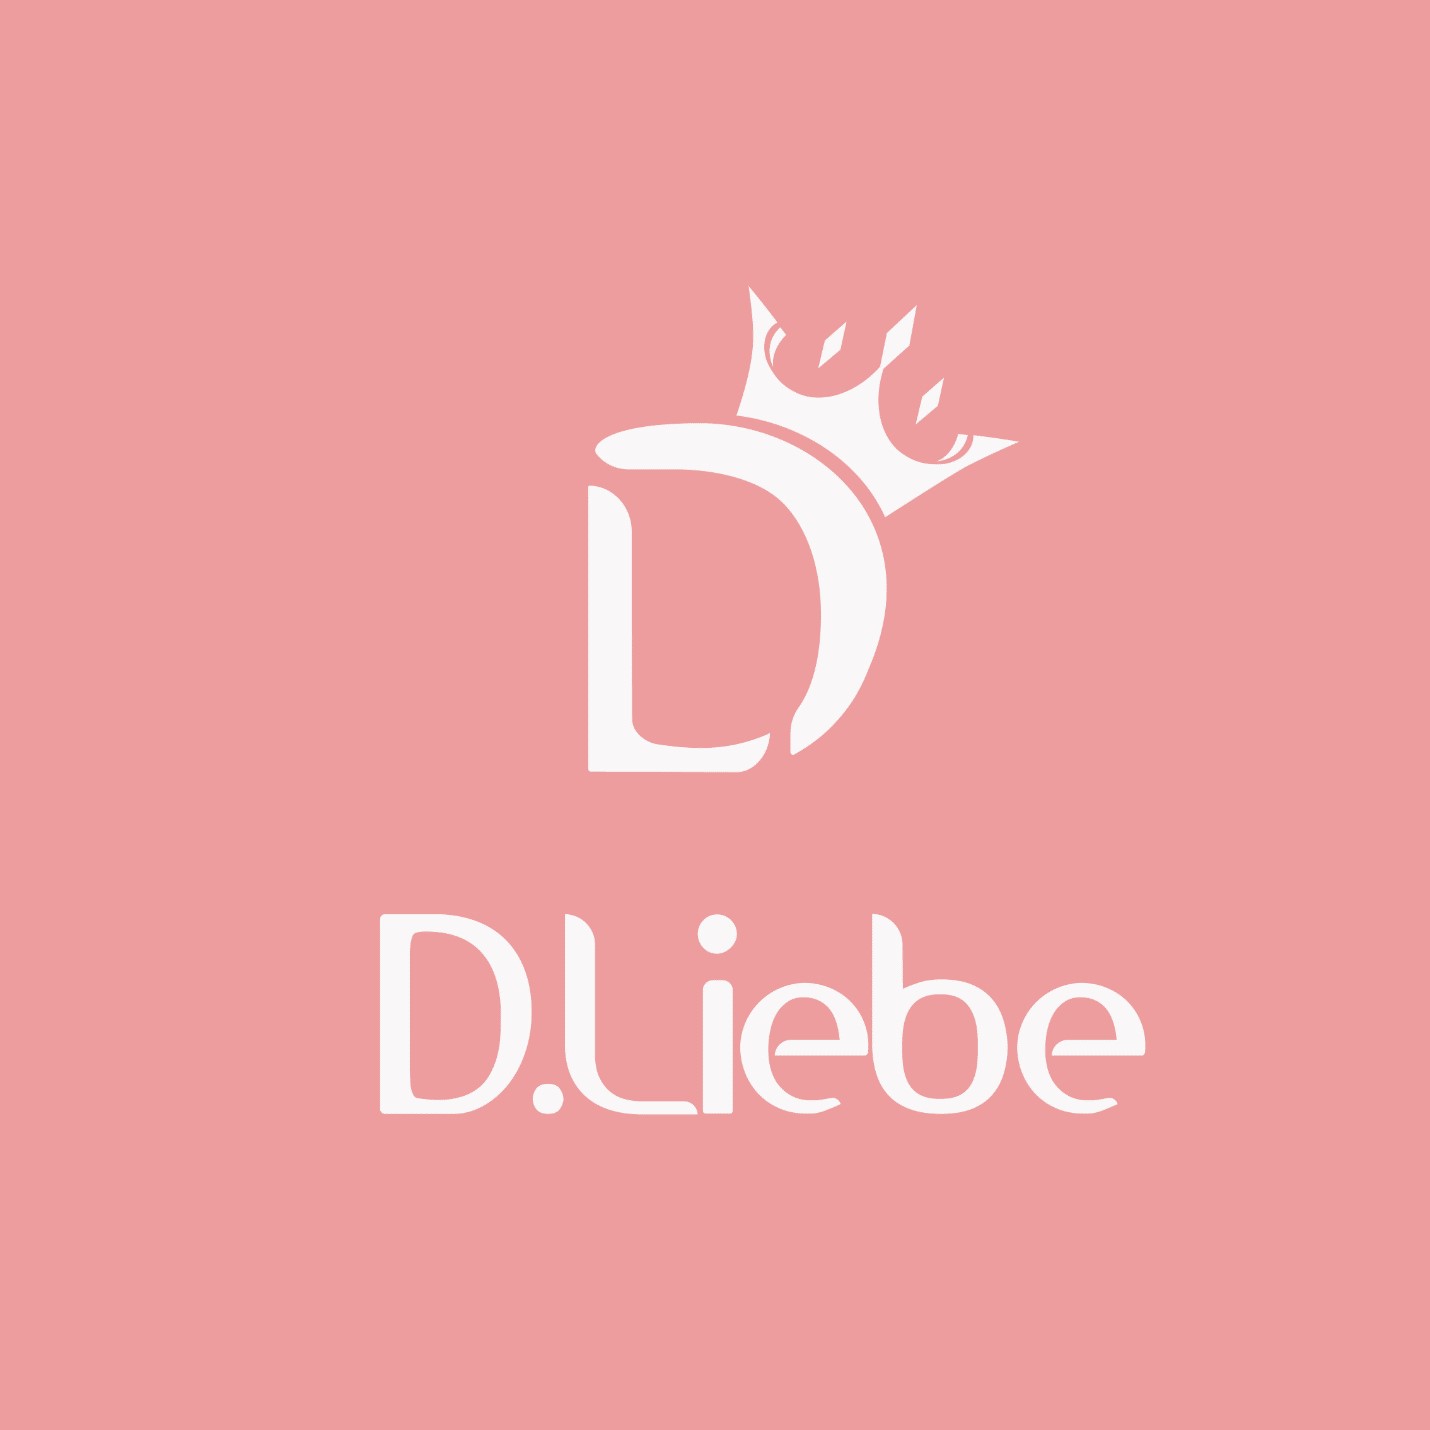 D.Liebe - Thương hiệu thời trang cho chị em công sở - ảnh 1